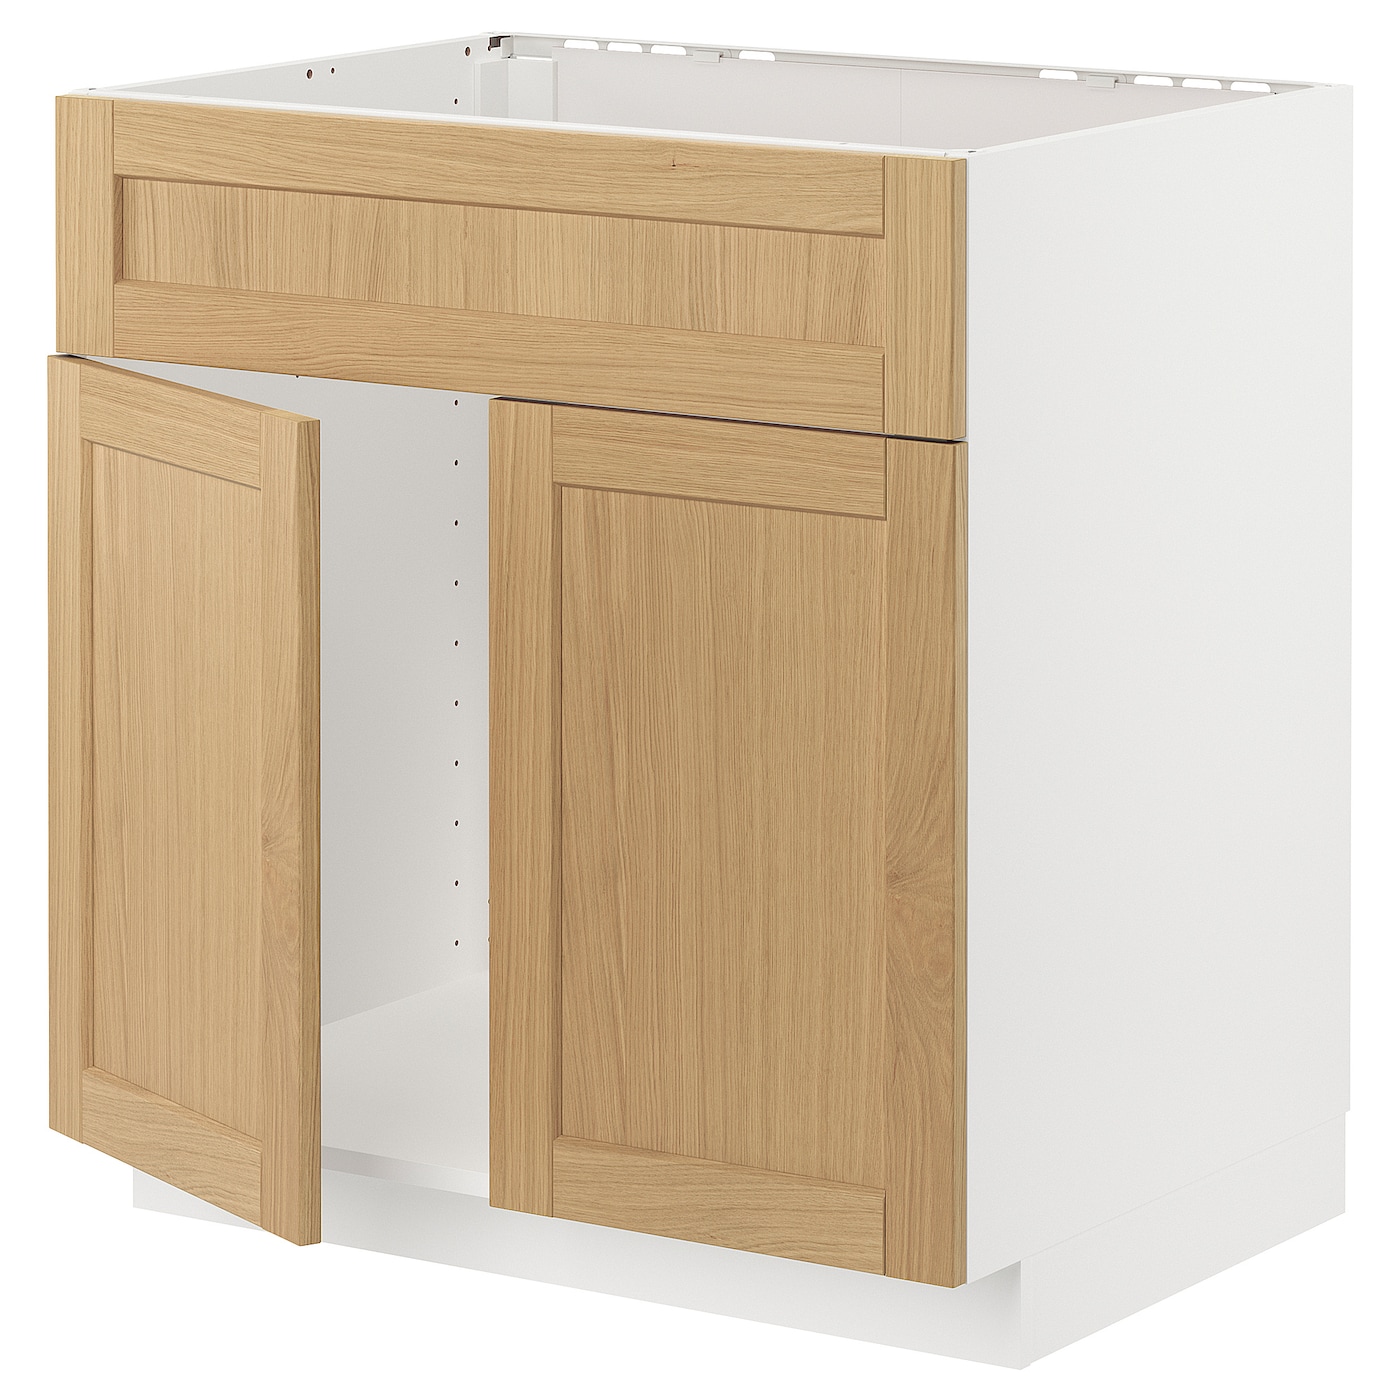 Напольный шкаф - METOD IKEA/ МЕТОД ИКЕА,  80х60 см, белый/под беленый дуб